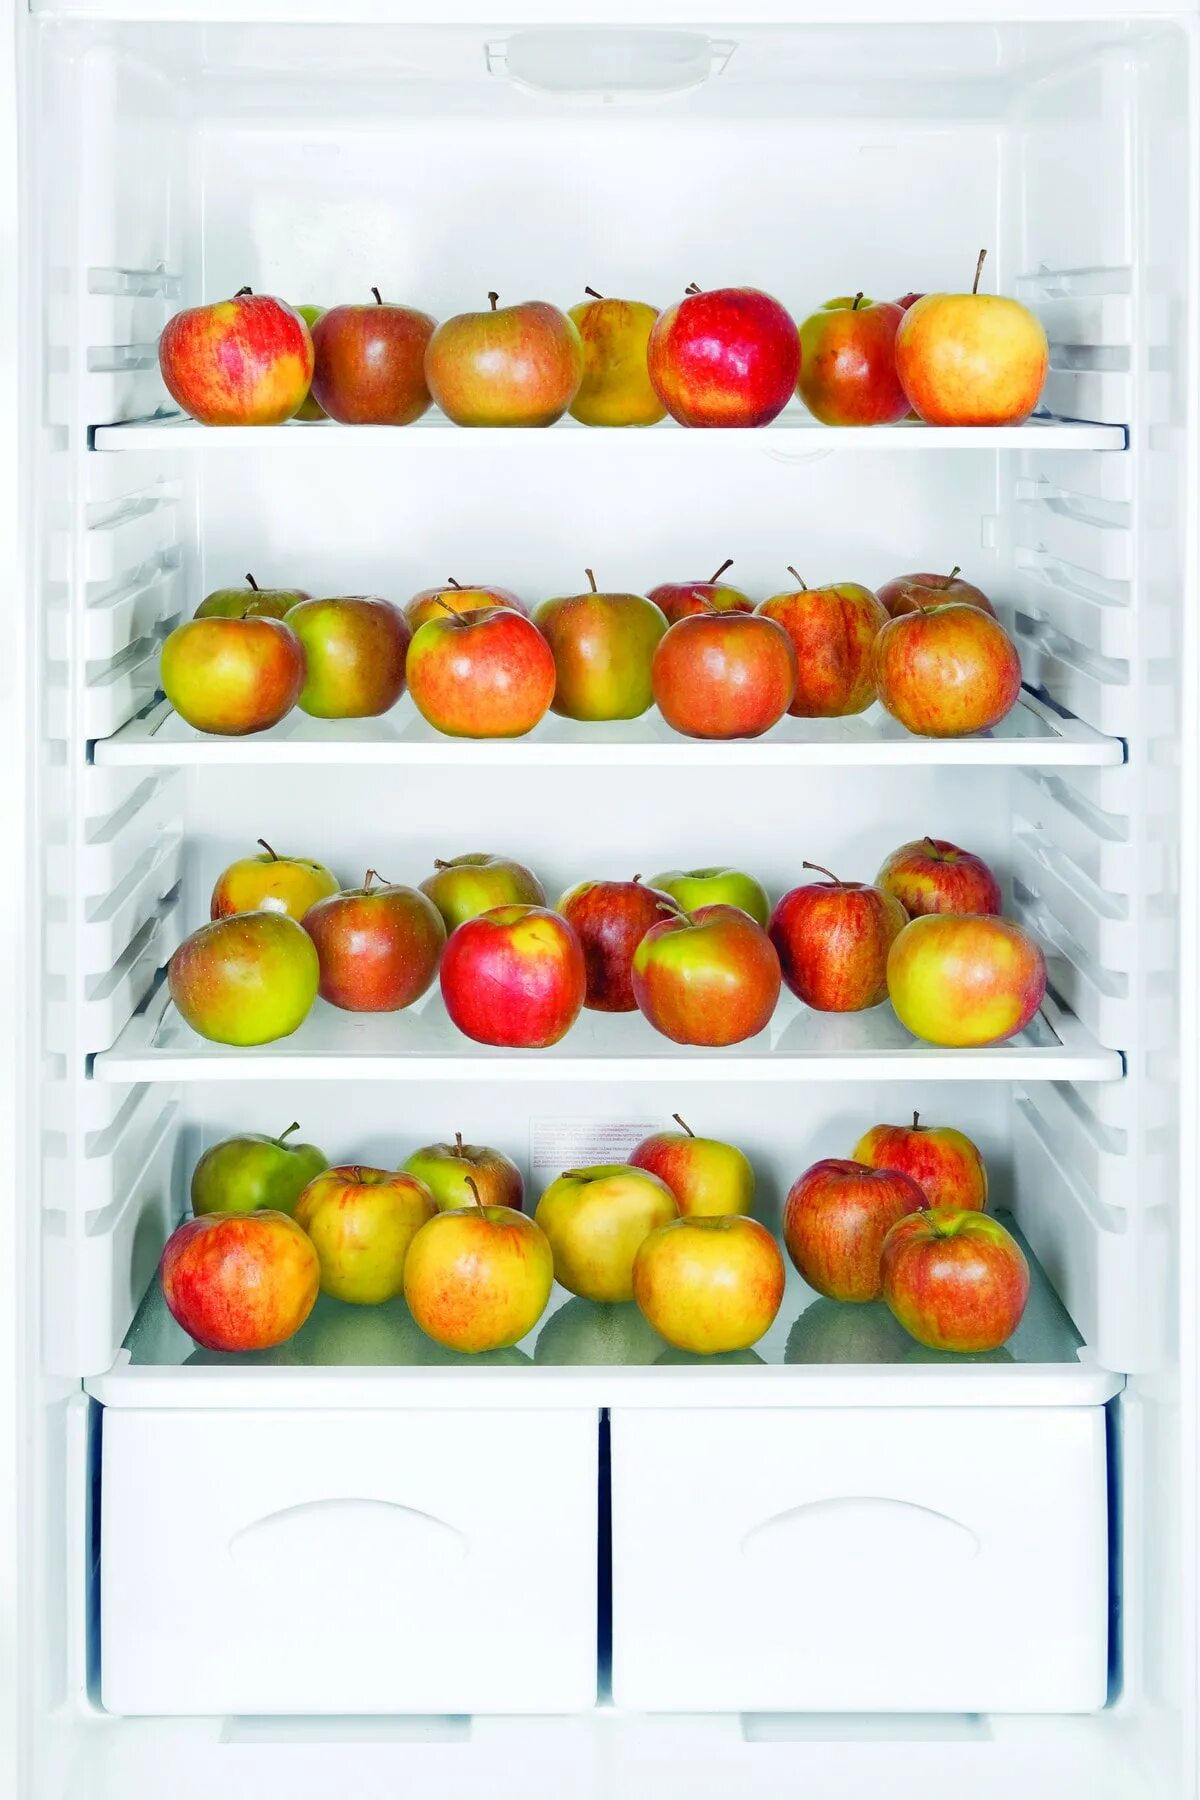 Сколько яблок в холодильнике. Яблоки в холодильнике. Холодильник для хранения яблок. Холодильник Apple. Одно яблоко в холодильнике.